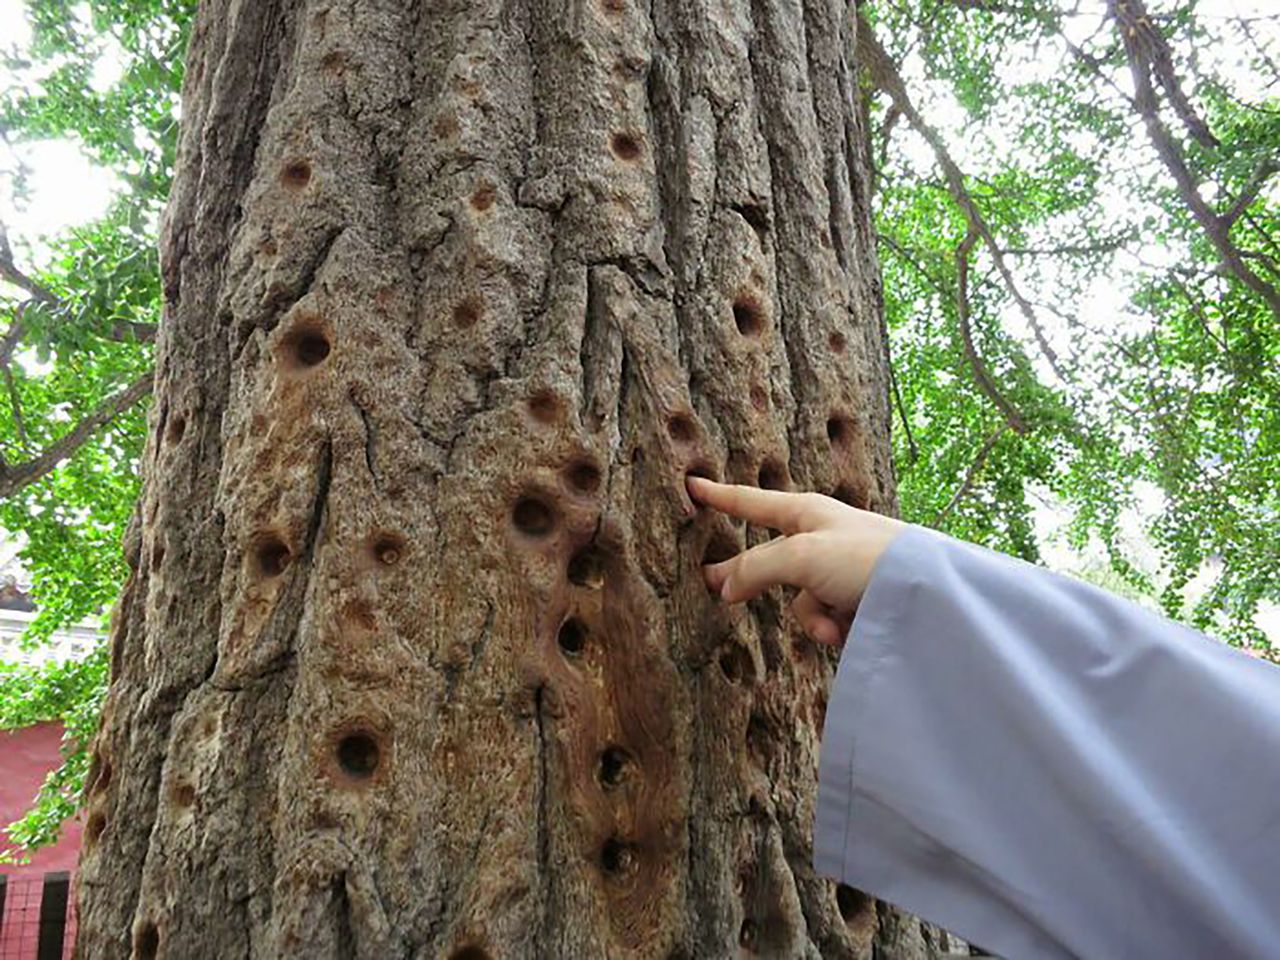 Dziury w drzewie powstawały przez setki lat wskutek ćwiczenia siły palców mnichów klasztoru Szaolin.